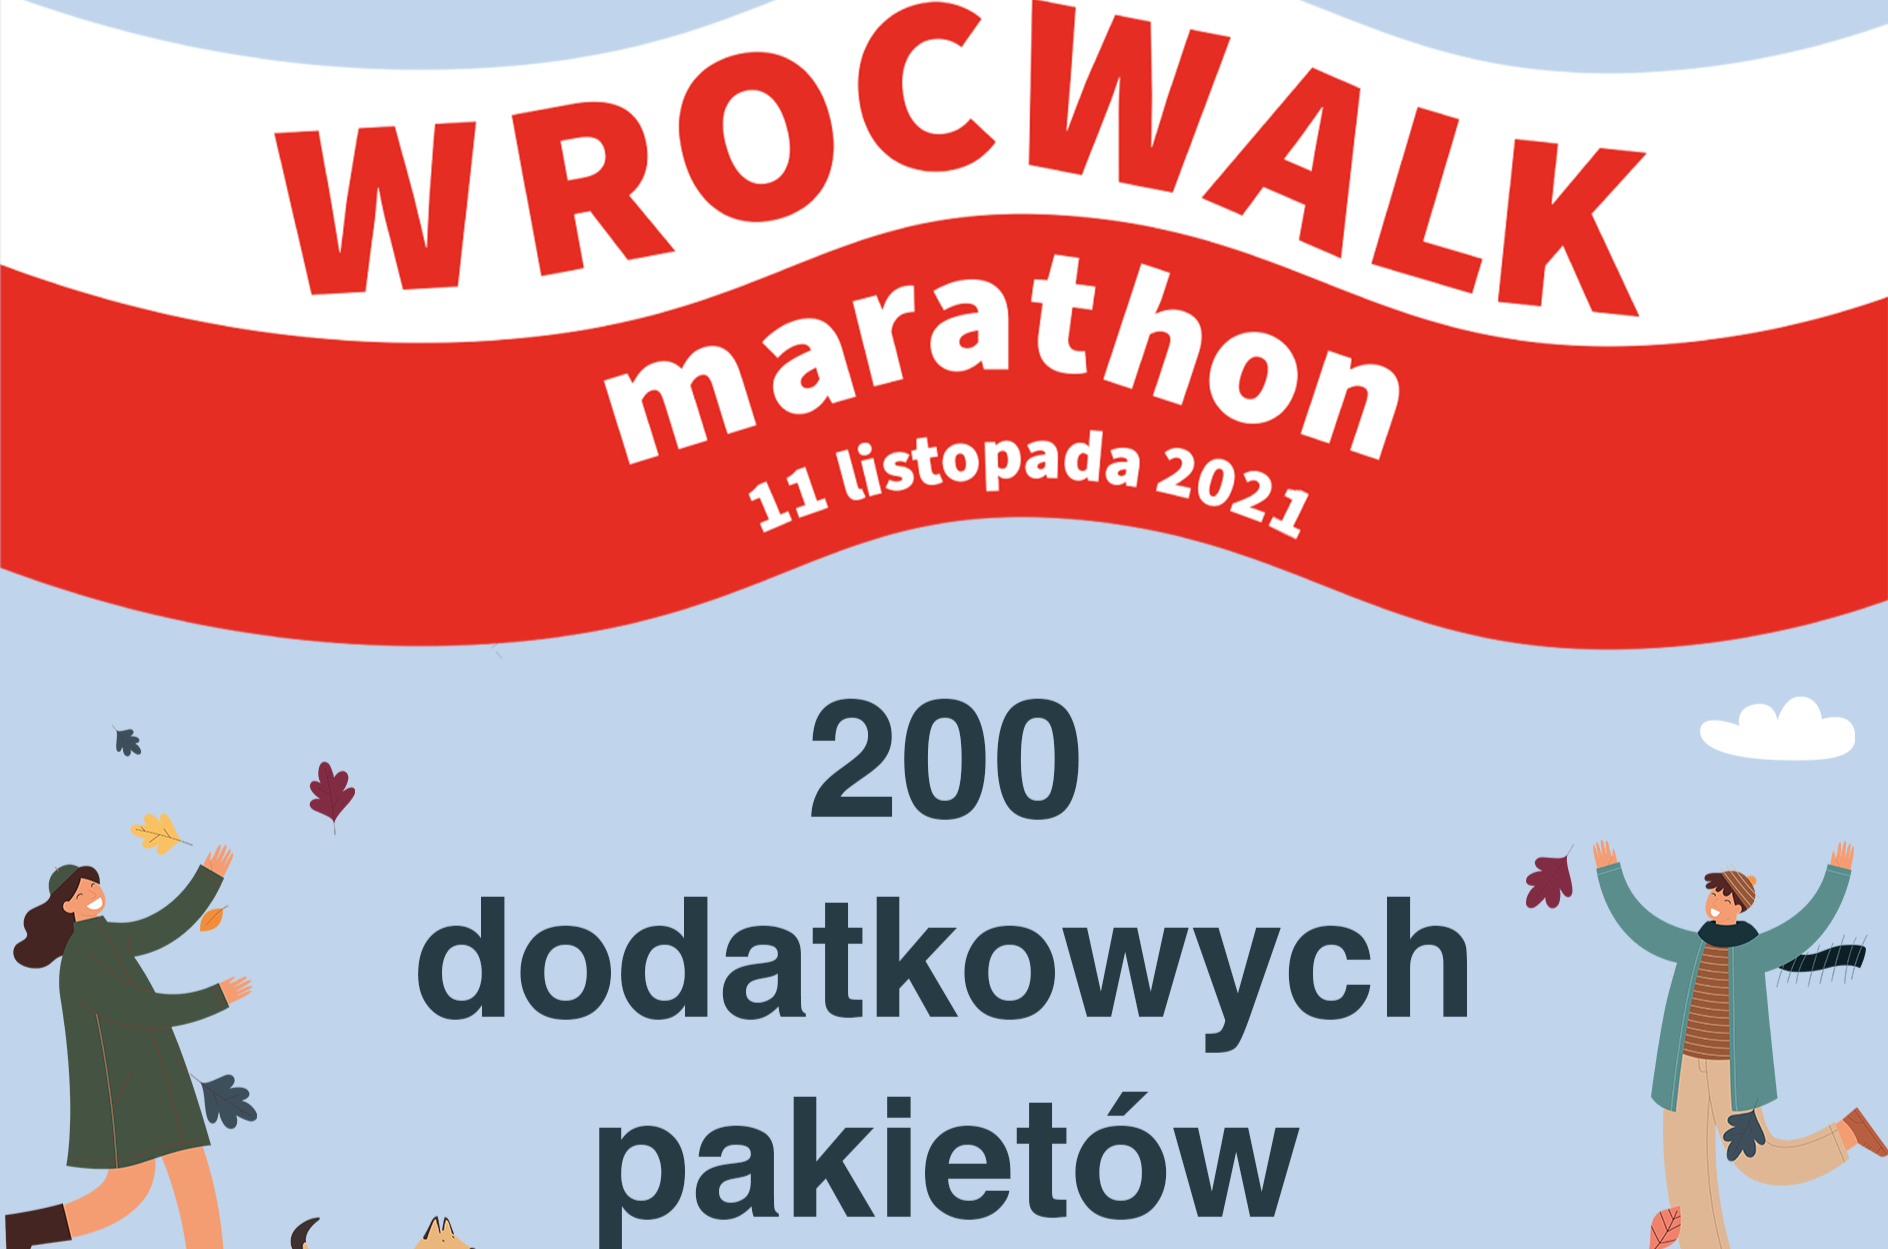 200 dodatkowych pakietów na WrocWalk Marathon 2021!